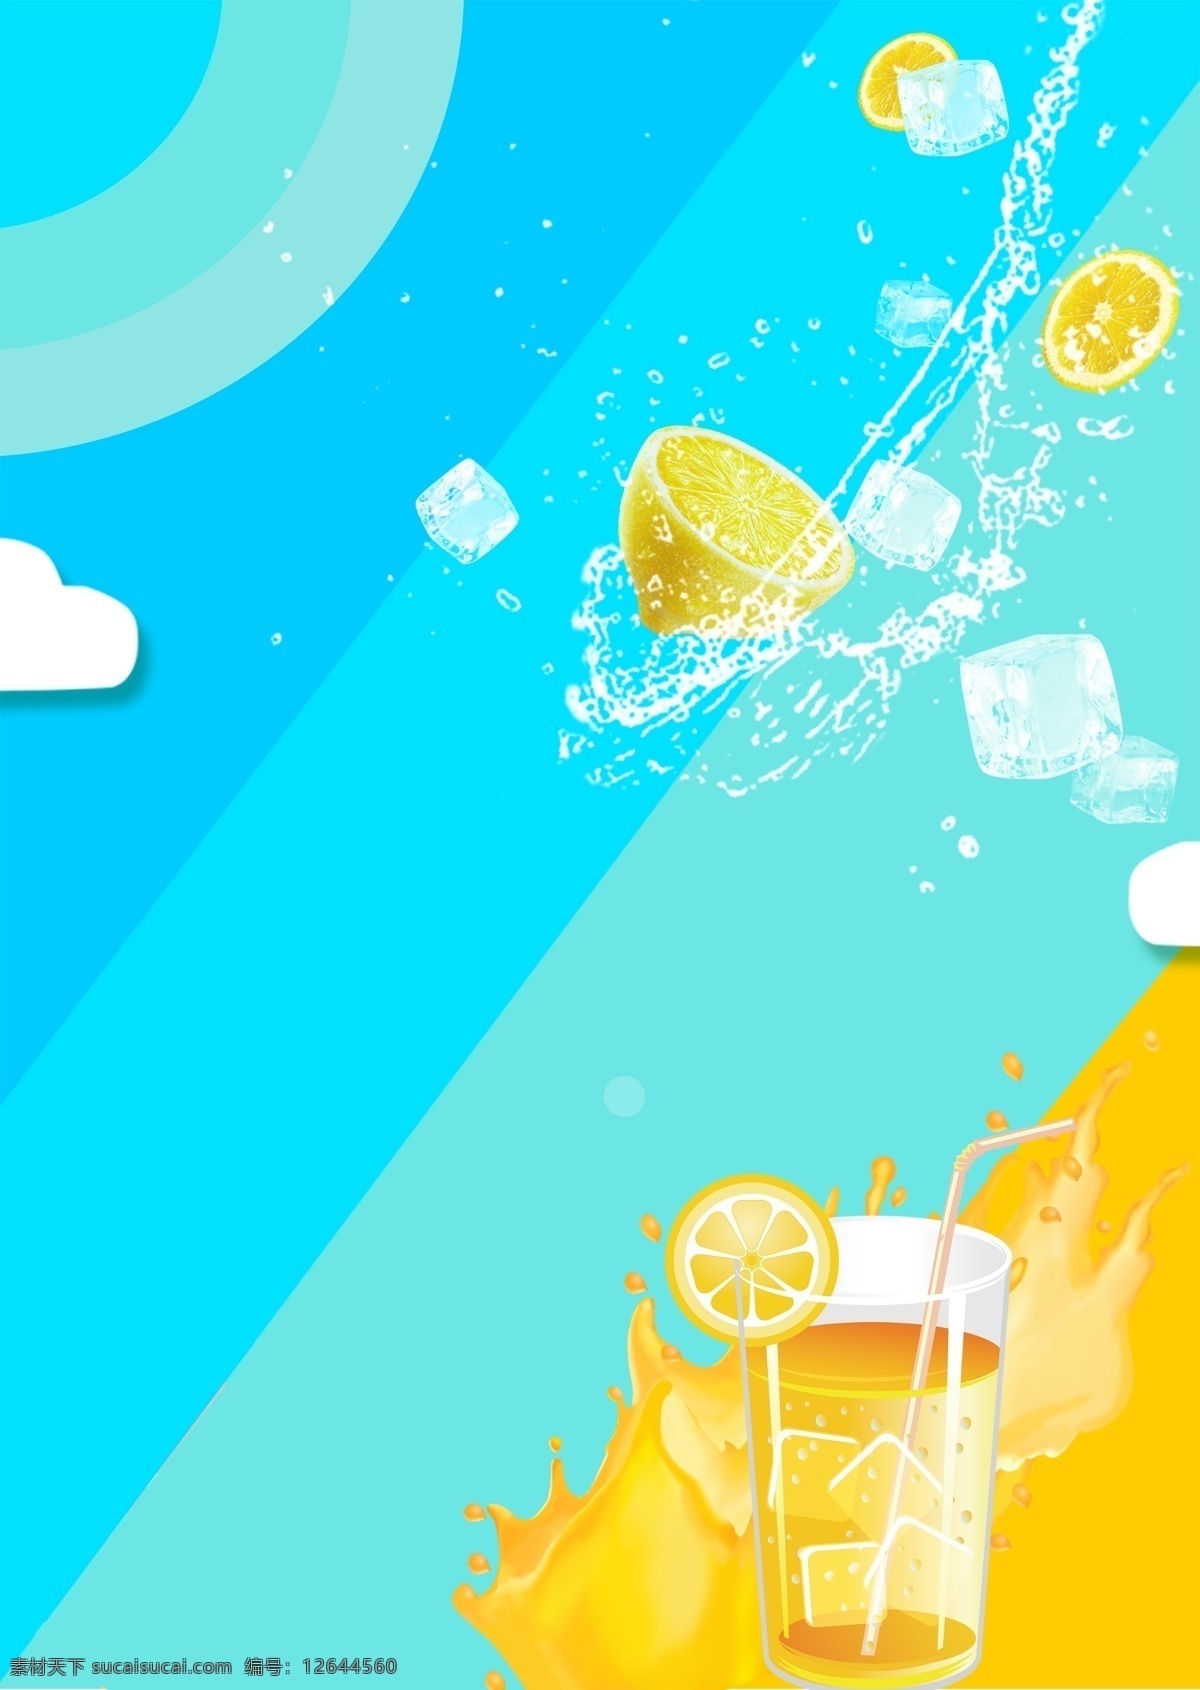 夏季 饮品 水果汁 插画 海报 背景 水果 果汁 橙汁 解渴 解暑 黄色 橙色 鲜美可口 爽口 柠檬 冰镇果汁 西瓜